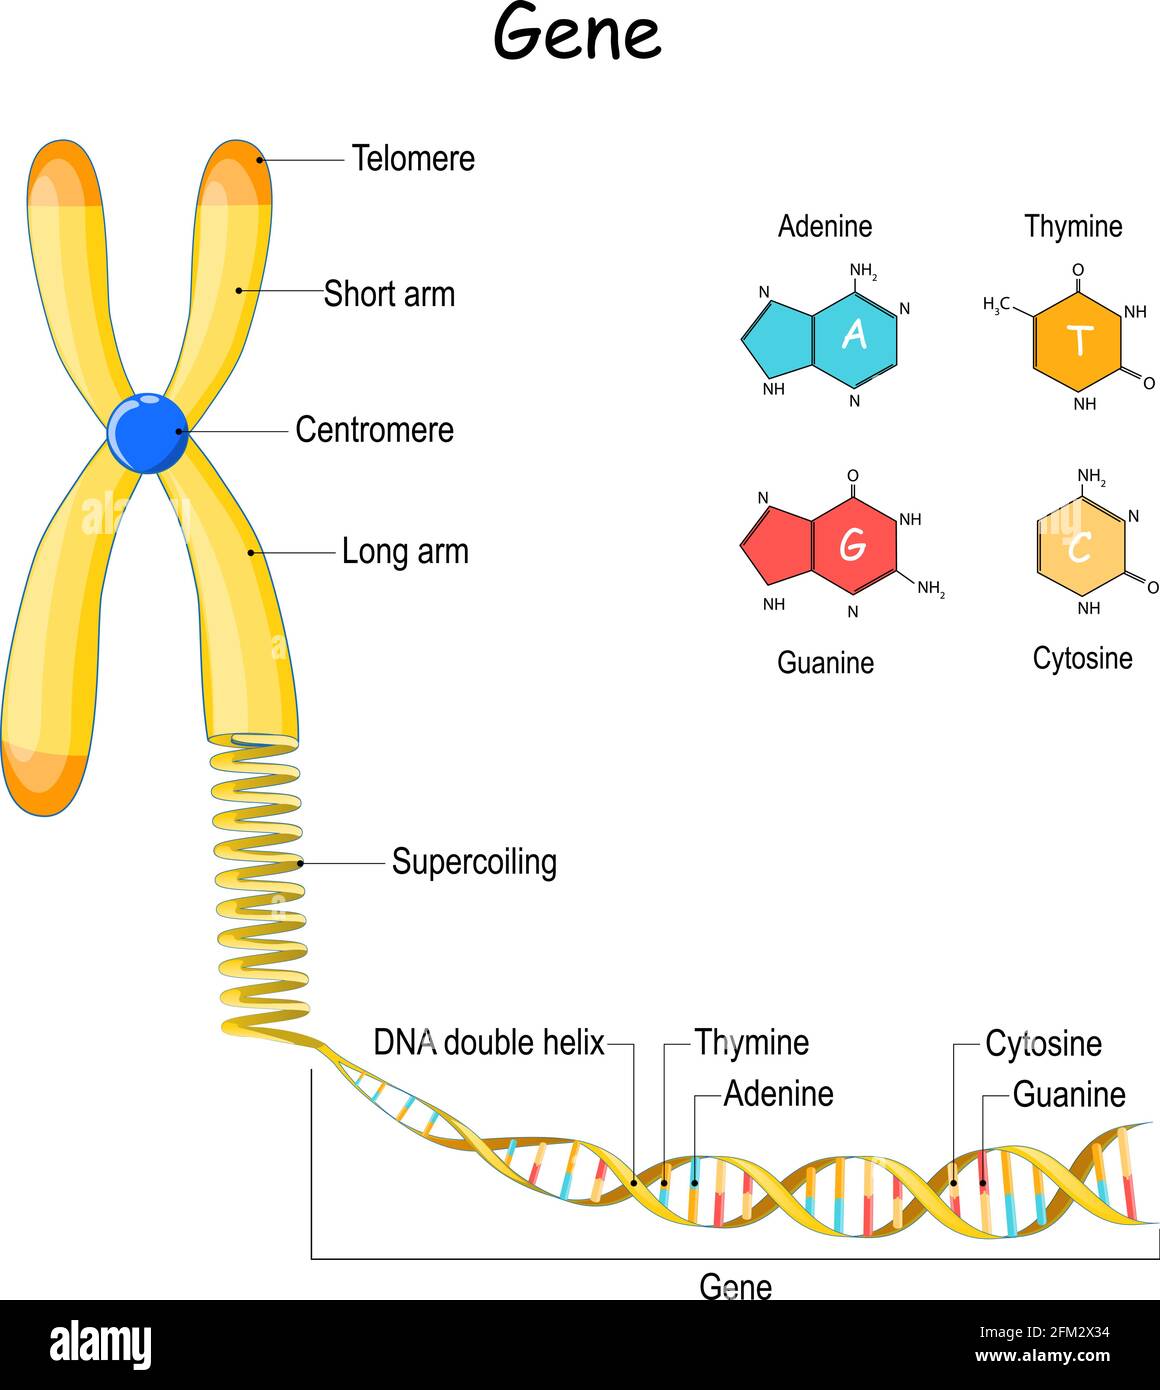 séquence génomique. Du chromosome au surbobinage, à l'ADN et au gène. Télomère. Illustration vectorielle. Formule structurale de l'adénine, de la cytosine et de la thymine Illustration de Vecteur